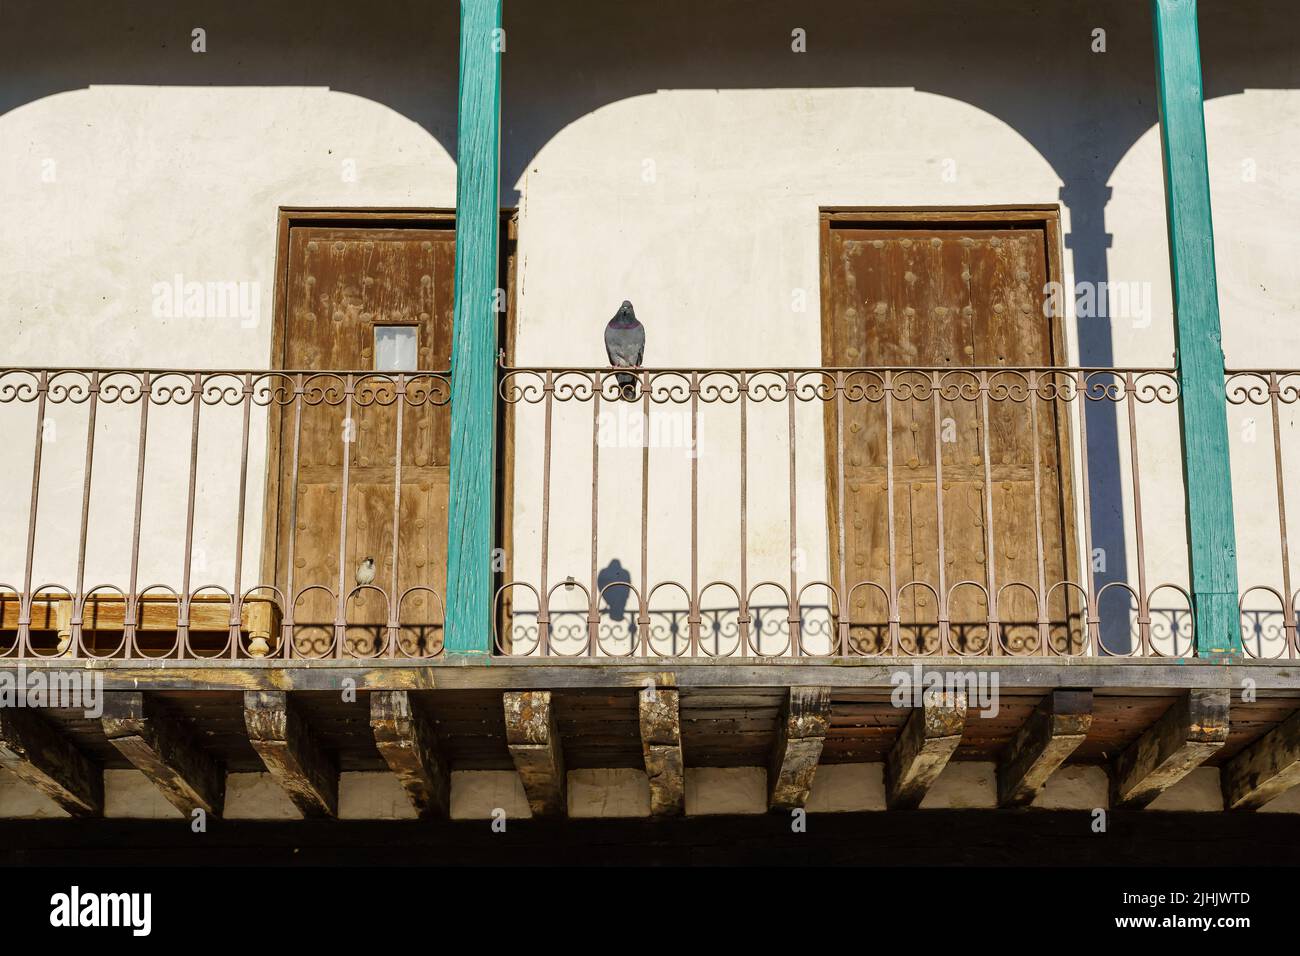 Tipici balconi nella piazza centrale di Chinchon a Madrid, vecchi balconi in legno in tutte le case. Spagna. Foto Stock